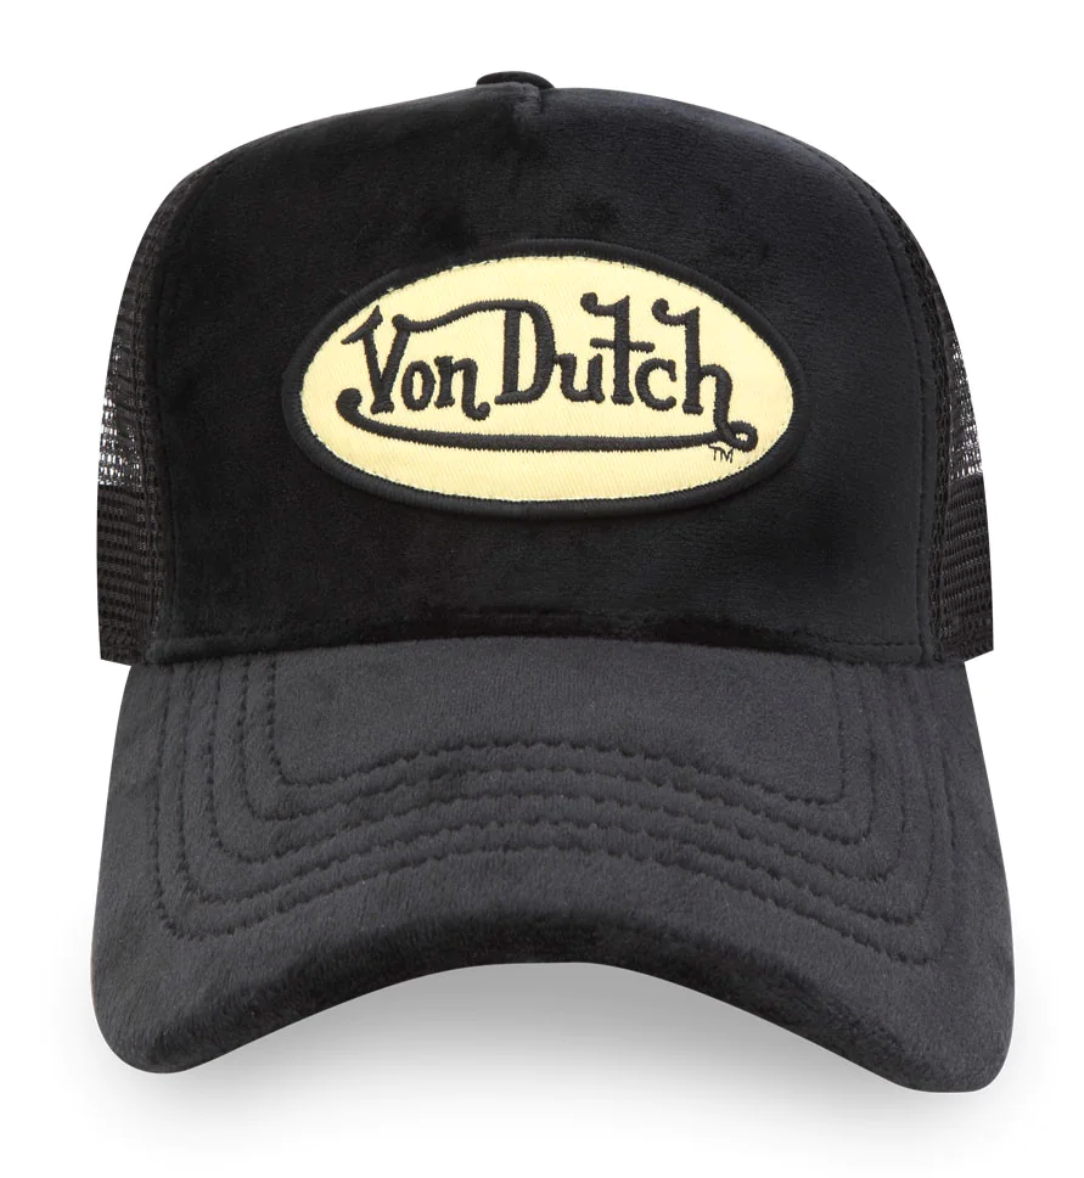 Von Dutch Velvet Black Trucker